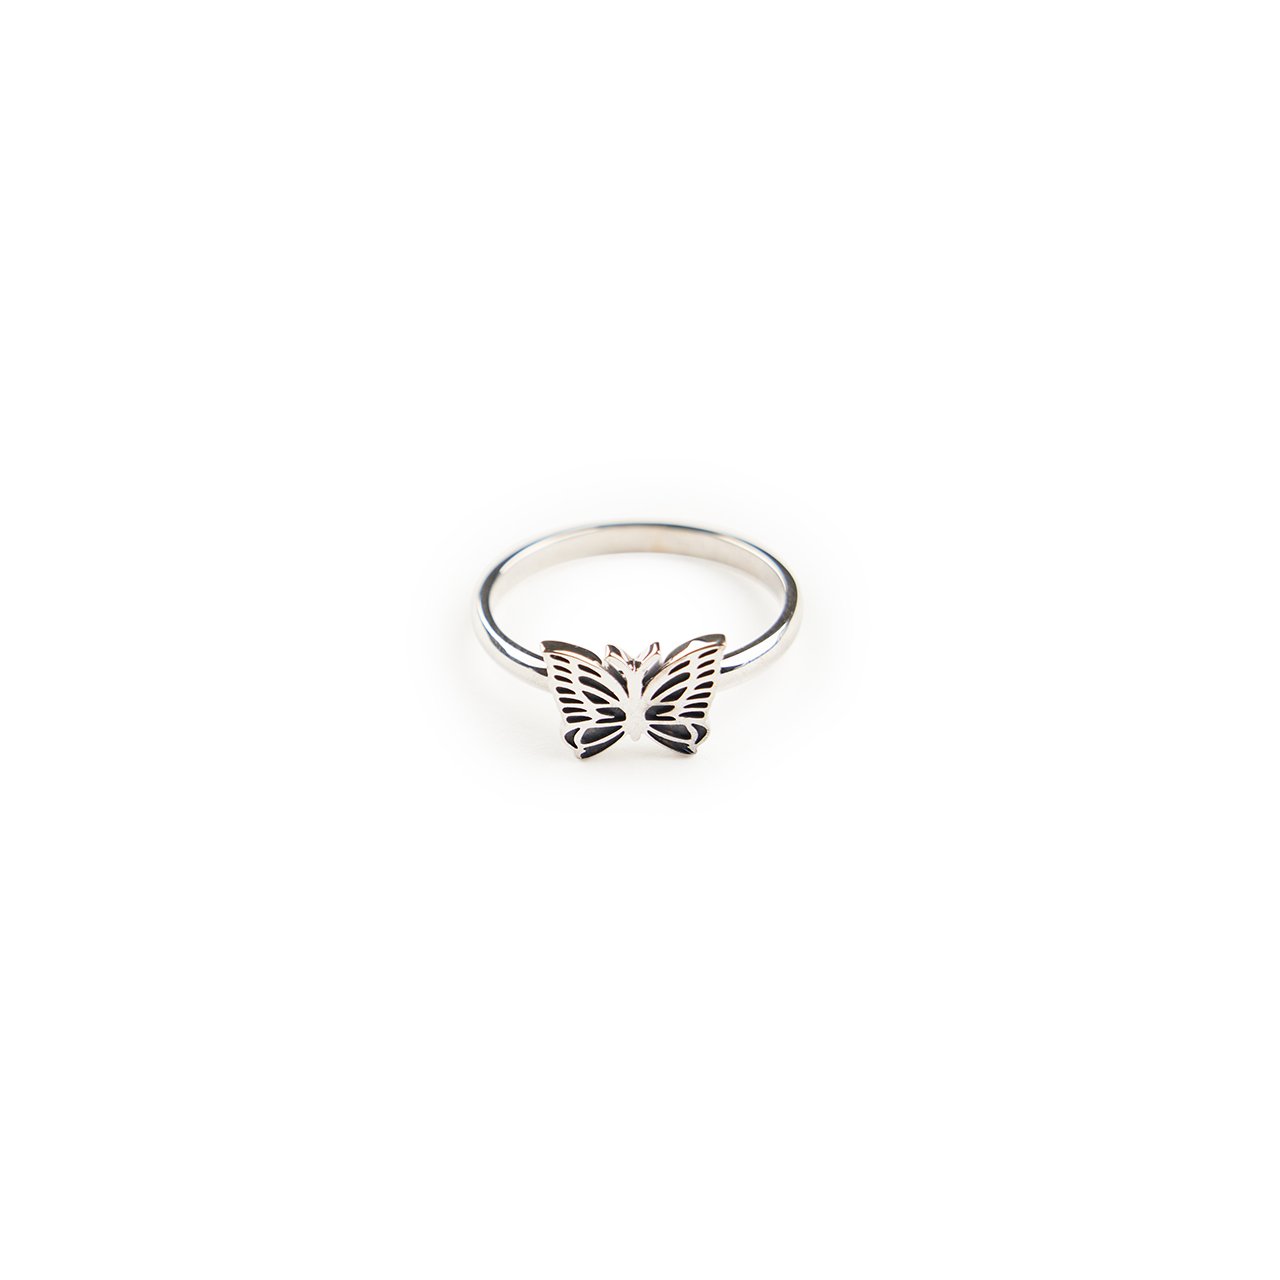 needles papillon ring (925 silver)